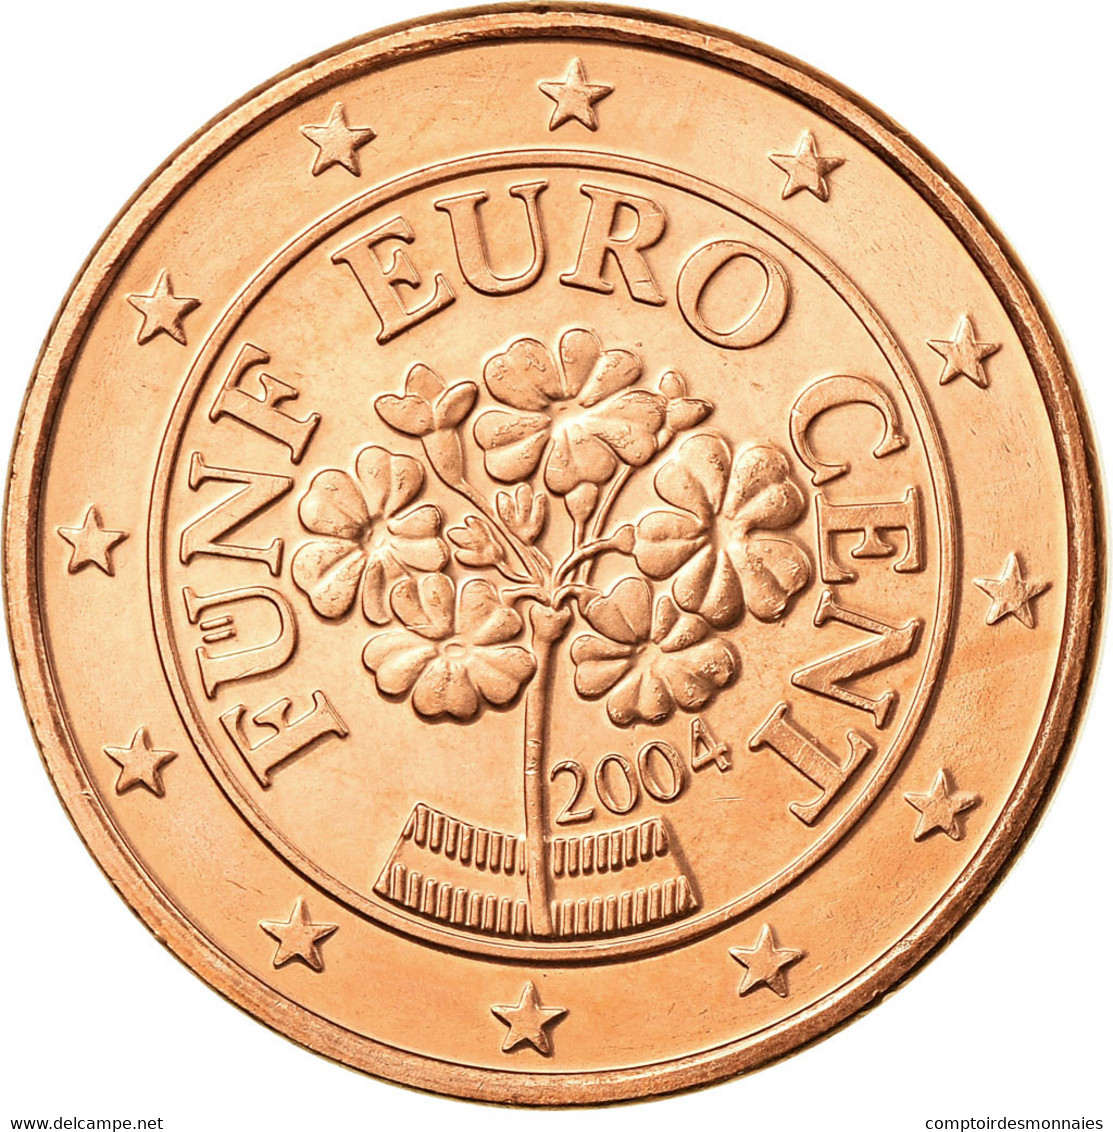 Autriche, 5 Euro Cent, 2004, SUP, Copper Plated Steel, KM:3084 - Autriche